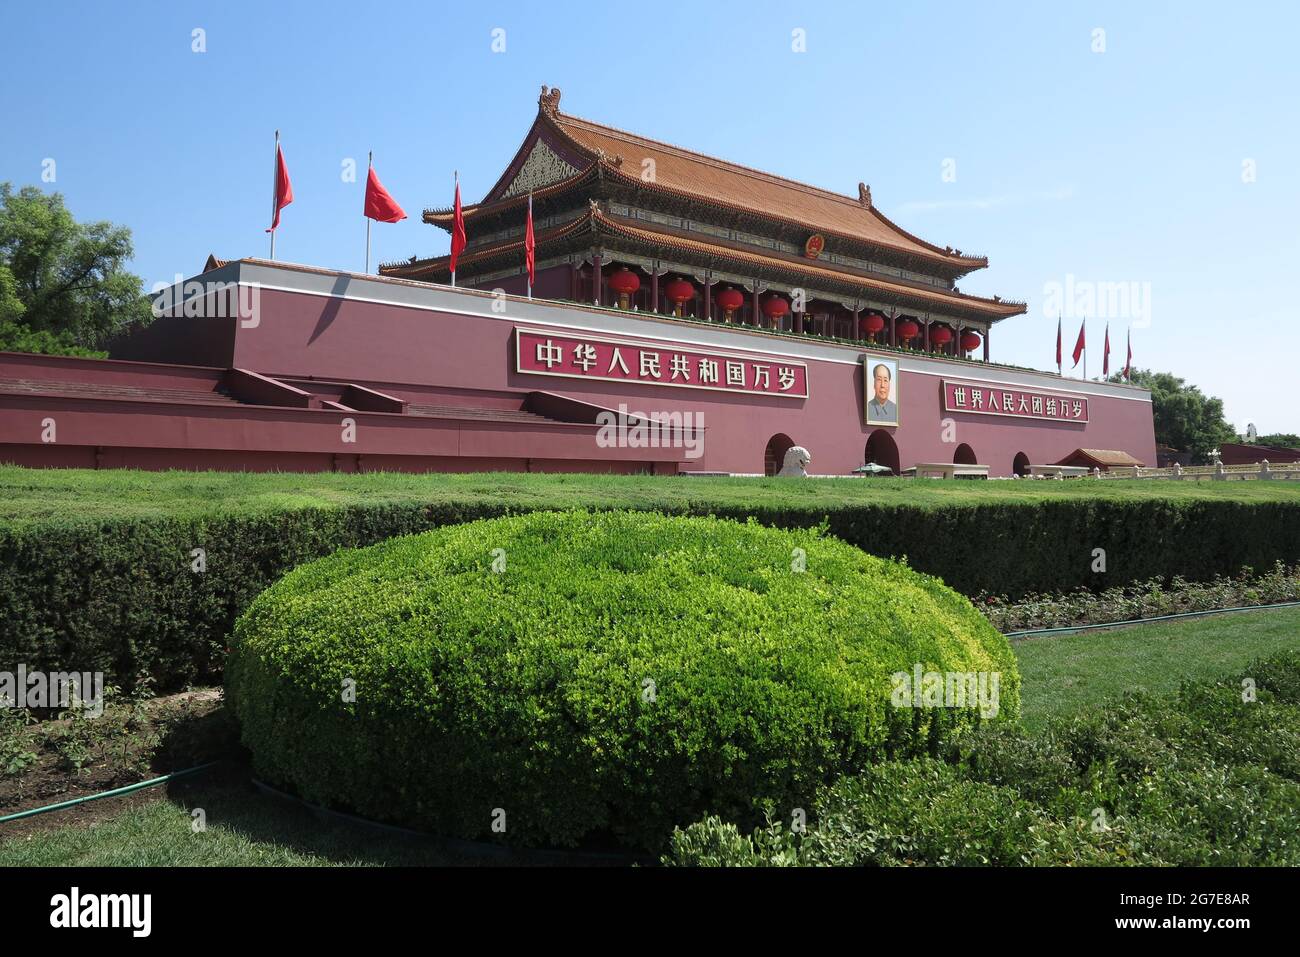 La place Tiananmen est située au centre de Pékin, la capitale de la République populaire de Chine, et à l'extrémité sud de la Cité interdite, le Monument des héros du peuple, la salle du souvenir du Président Mao, la Grande salle du peuple et le Musée national de Chine en face de Chang'an. Elle couvre une superficie de 4800 mètres carrés et attire l'attention du monde entier pour son art architectural exceptionnel et son statut politique spécial. (Photo de Sheldon Cooper / SOPA Images / Sipa USA) Banque D'Images